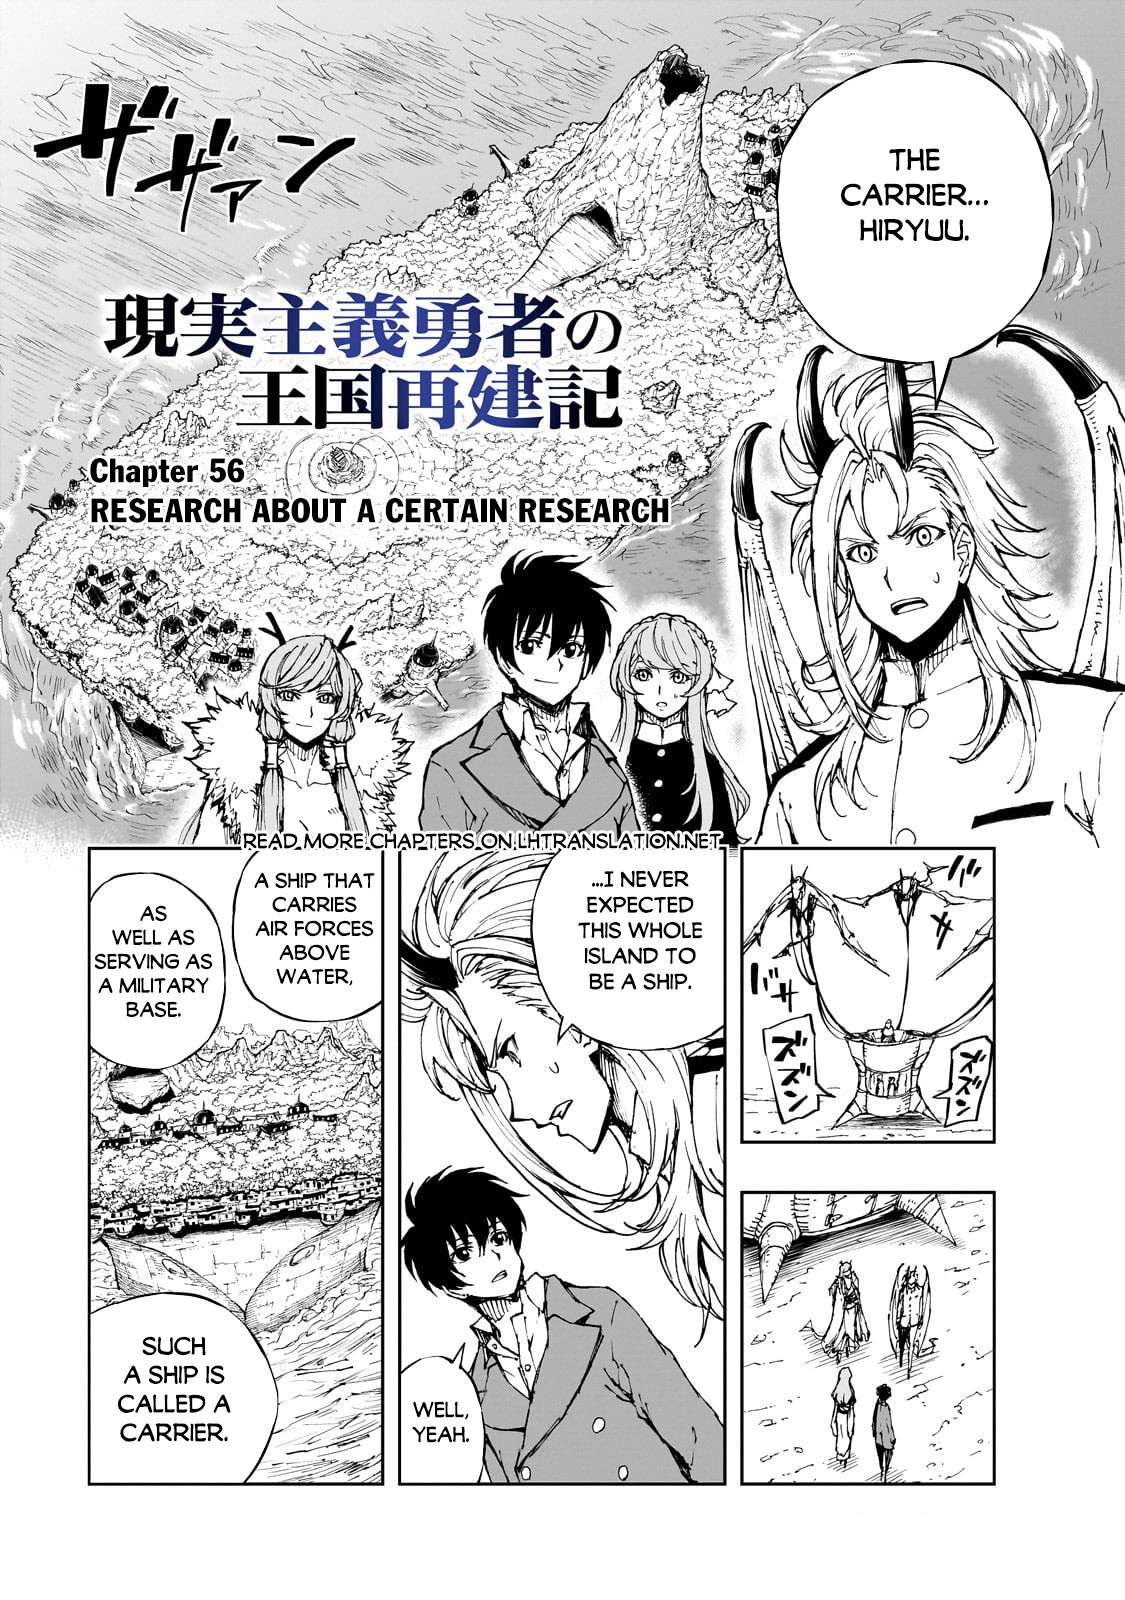 Read Genjitsushugisha no Oukokukaizouki Manga English [New Chapters] Online  Free - MangaClash